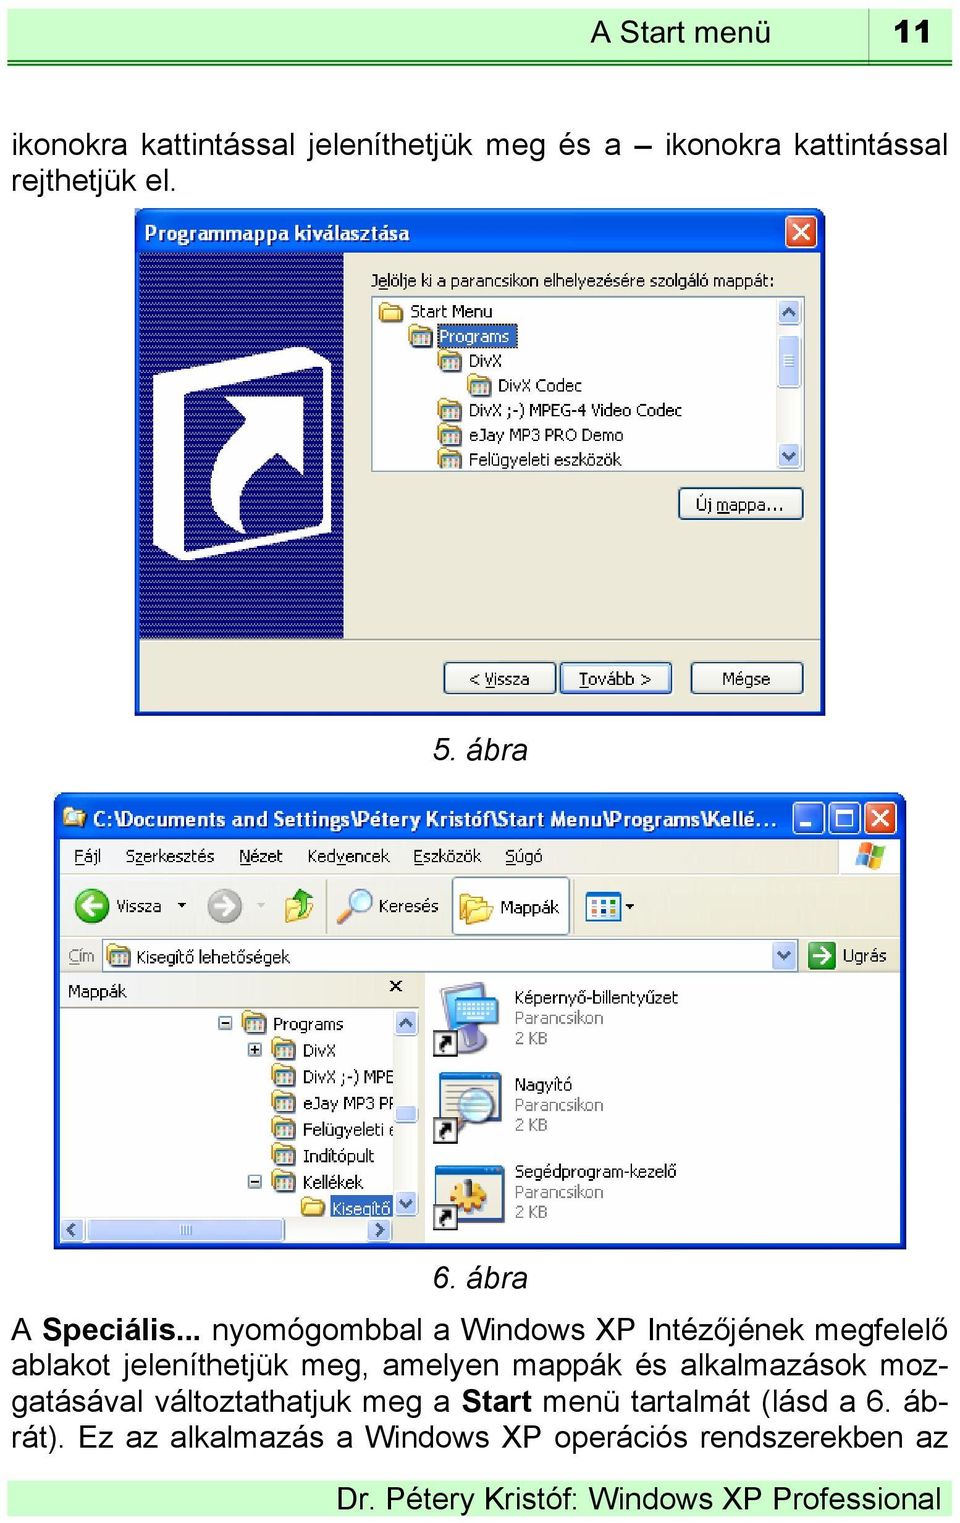 .. nyomógombbal a Windows XP Intézőjének megfelelő ablakot jeleníthetjük meg, amelyen